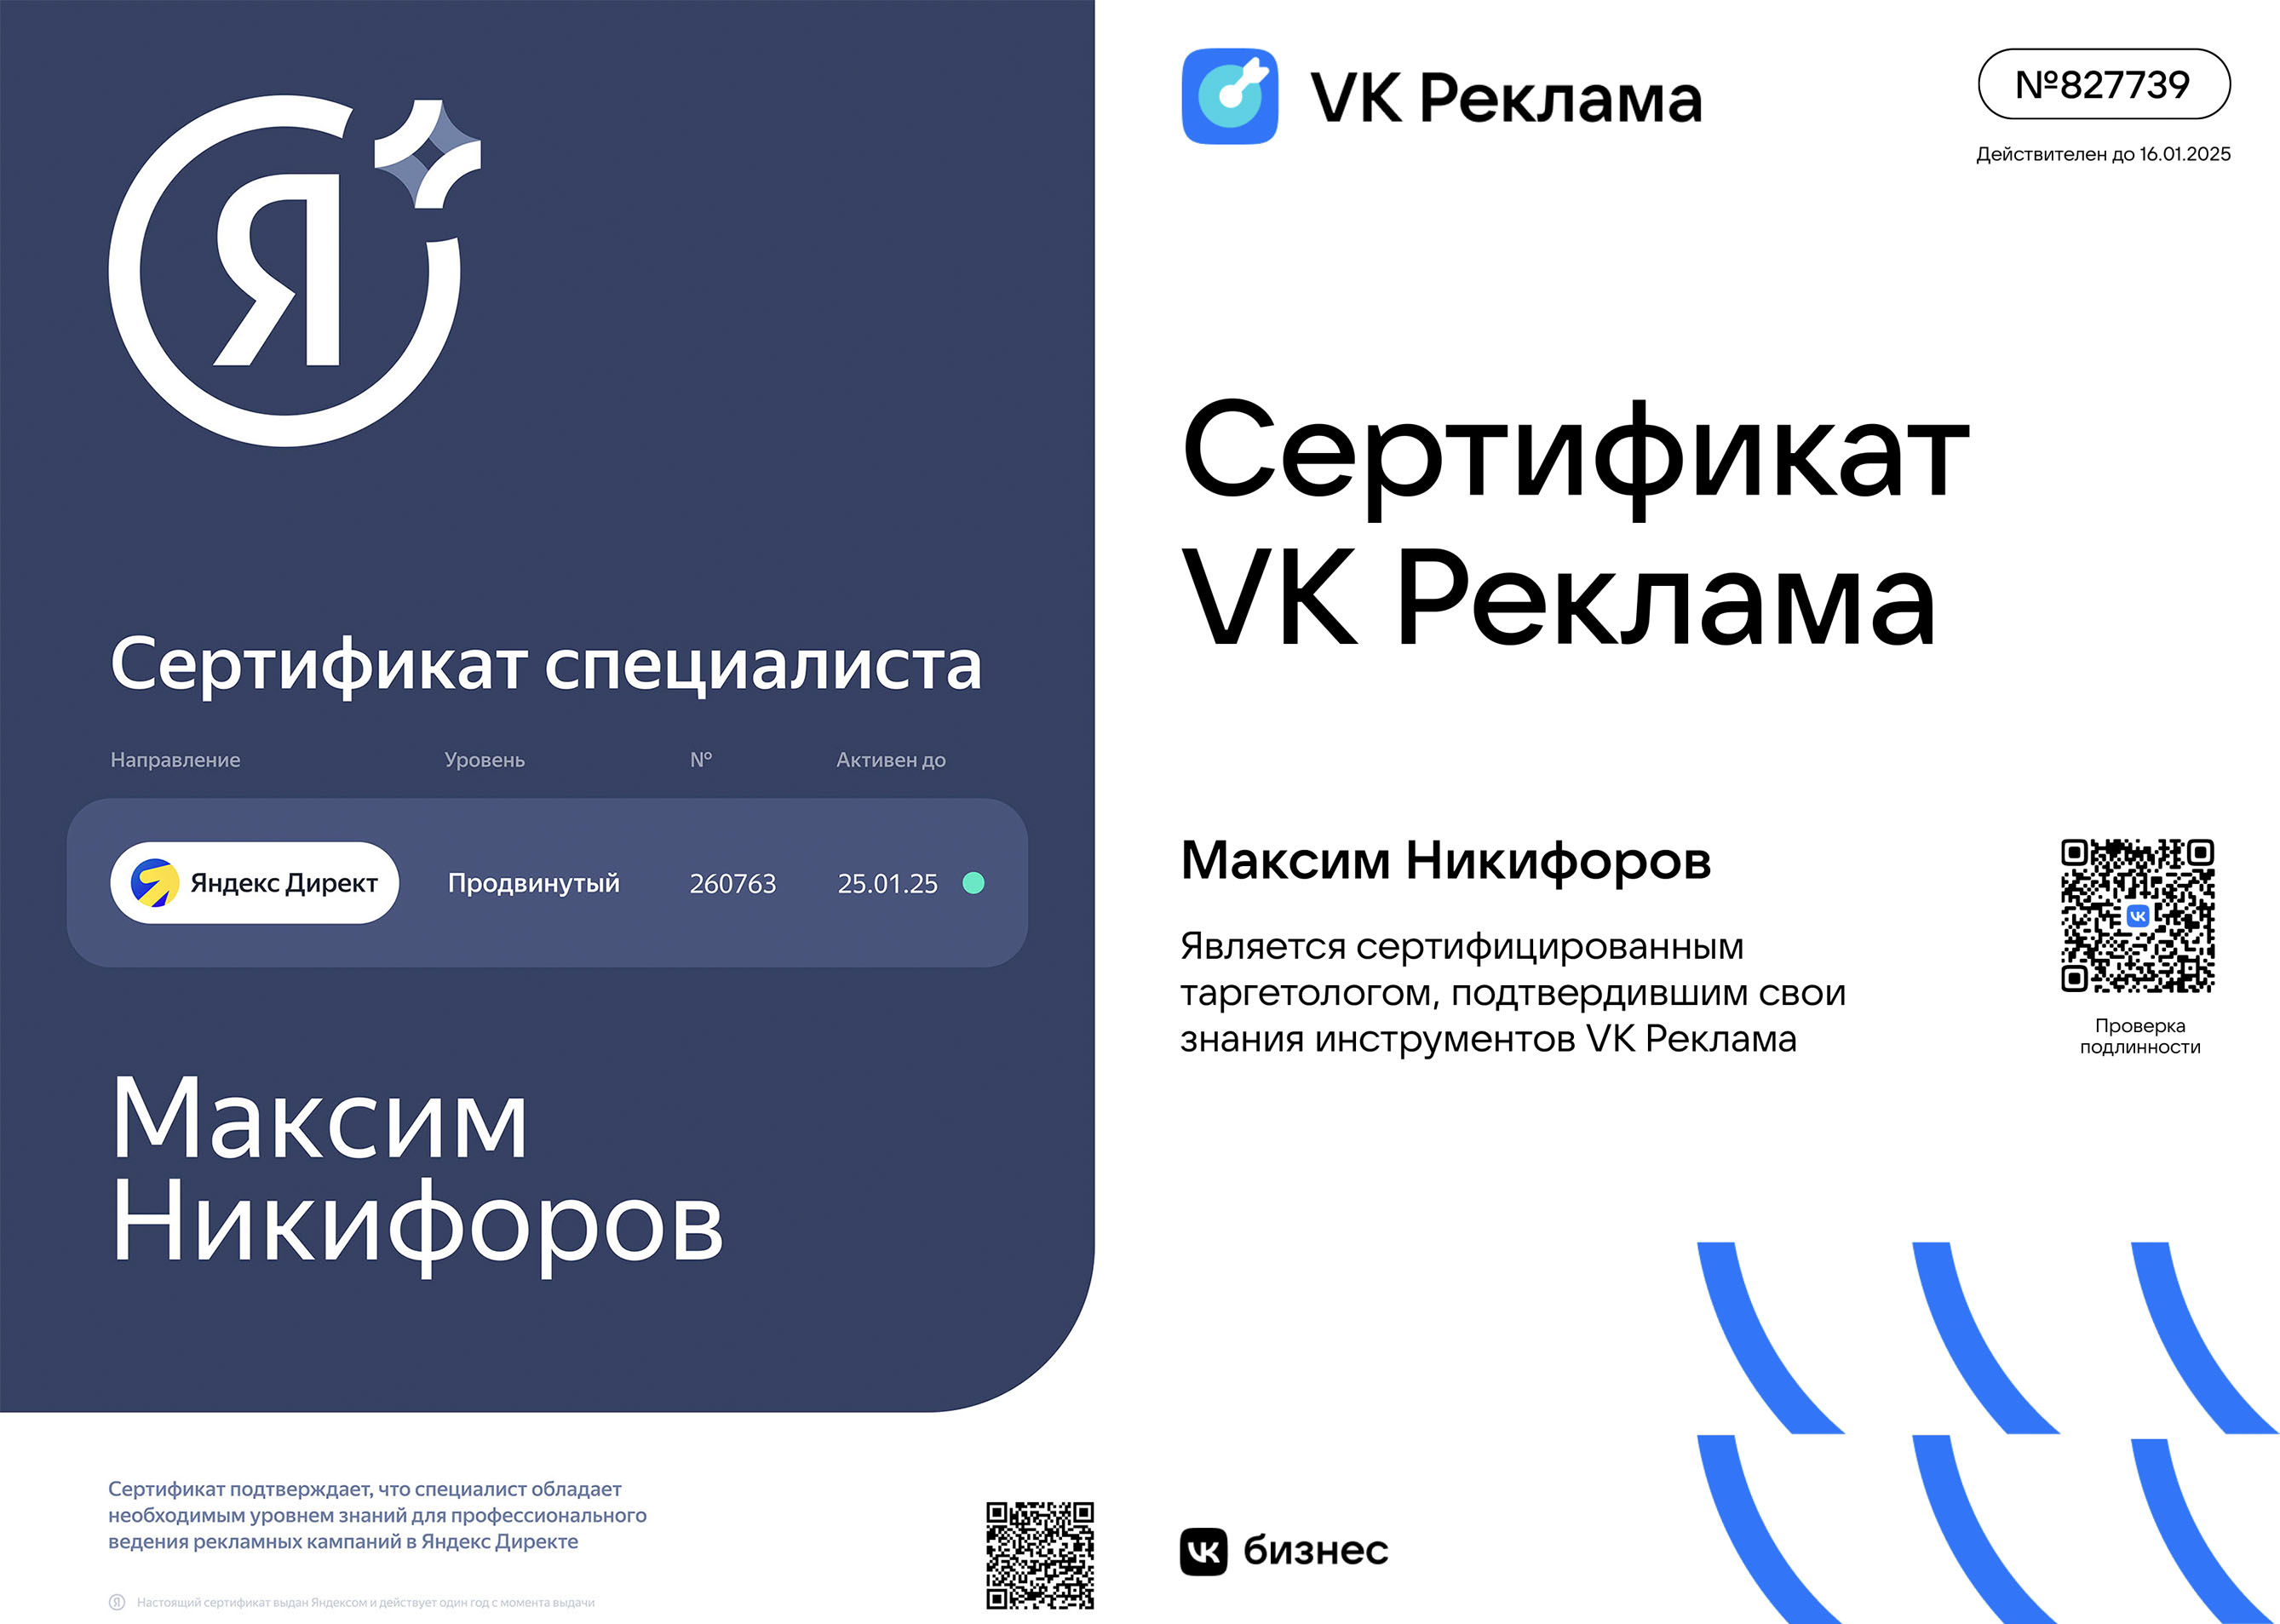 Сертифицированный специалист Вк реклама и Яндекс Директ